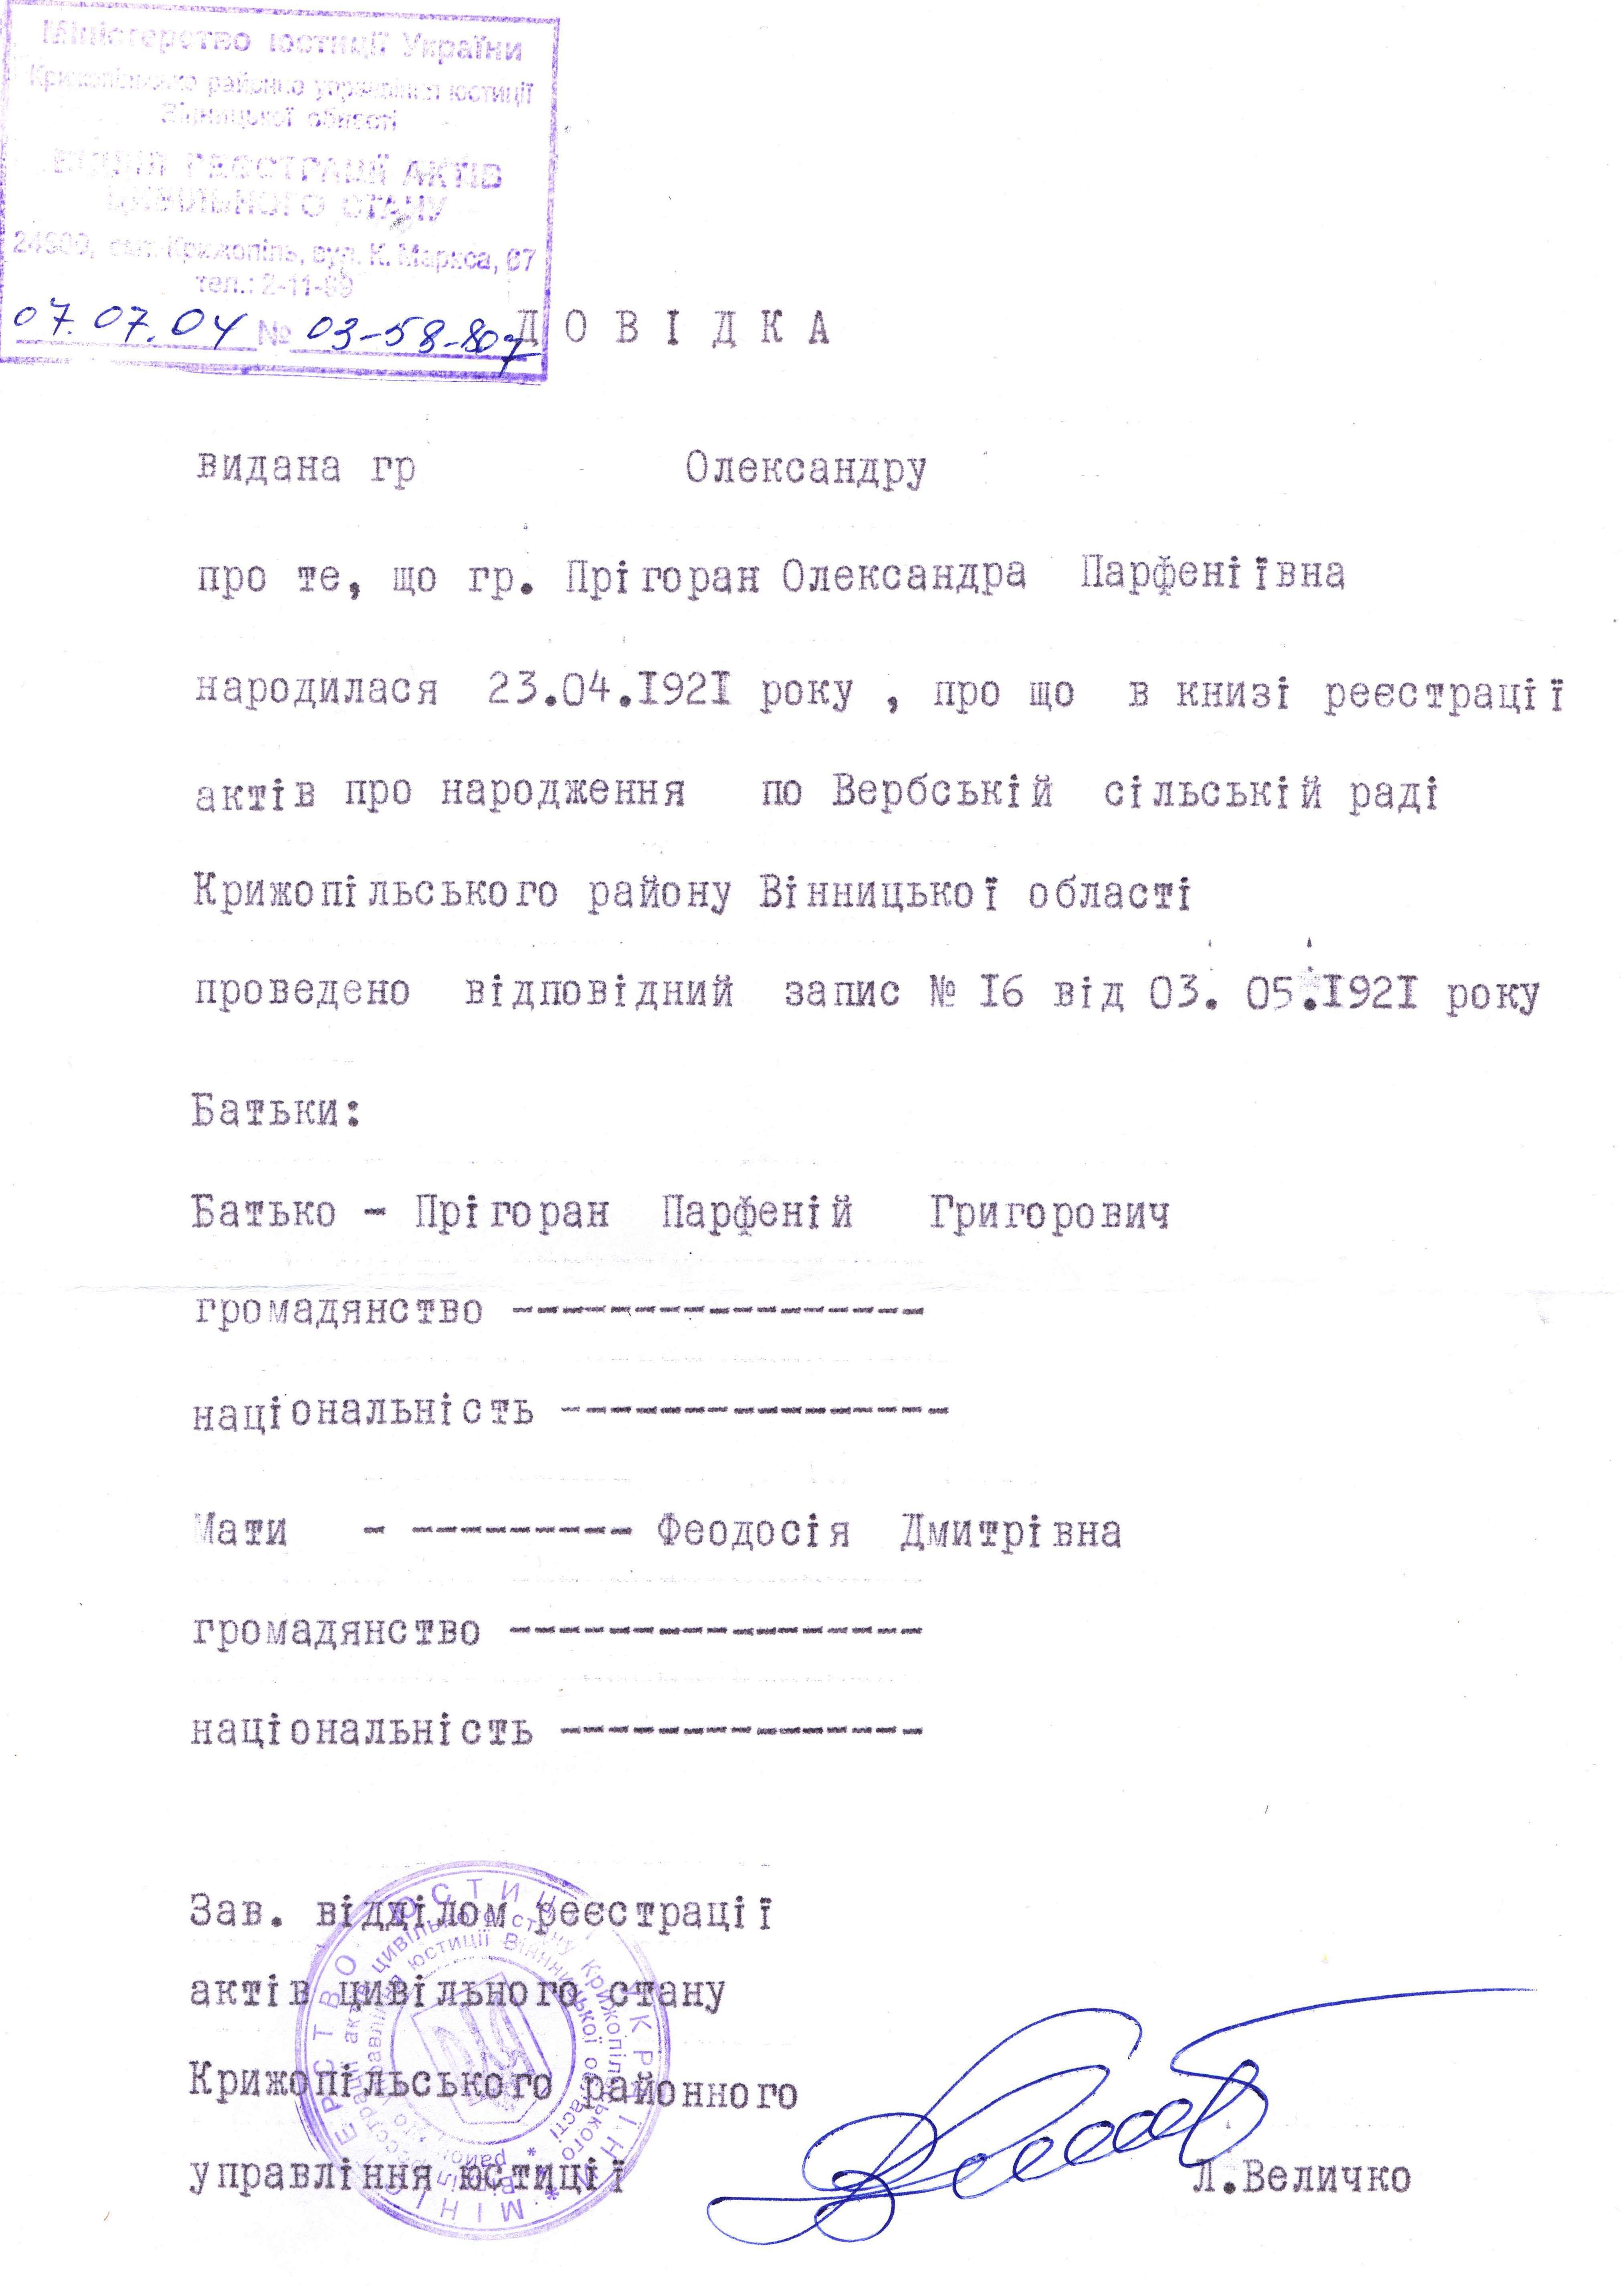 Метрическая запись о рождении Пригоран А.П. 23.04.1921г.